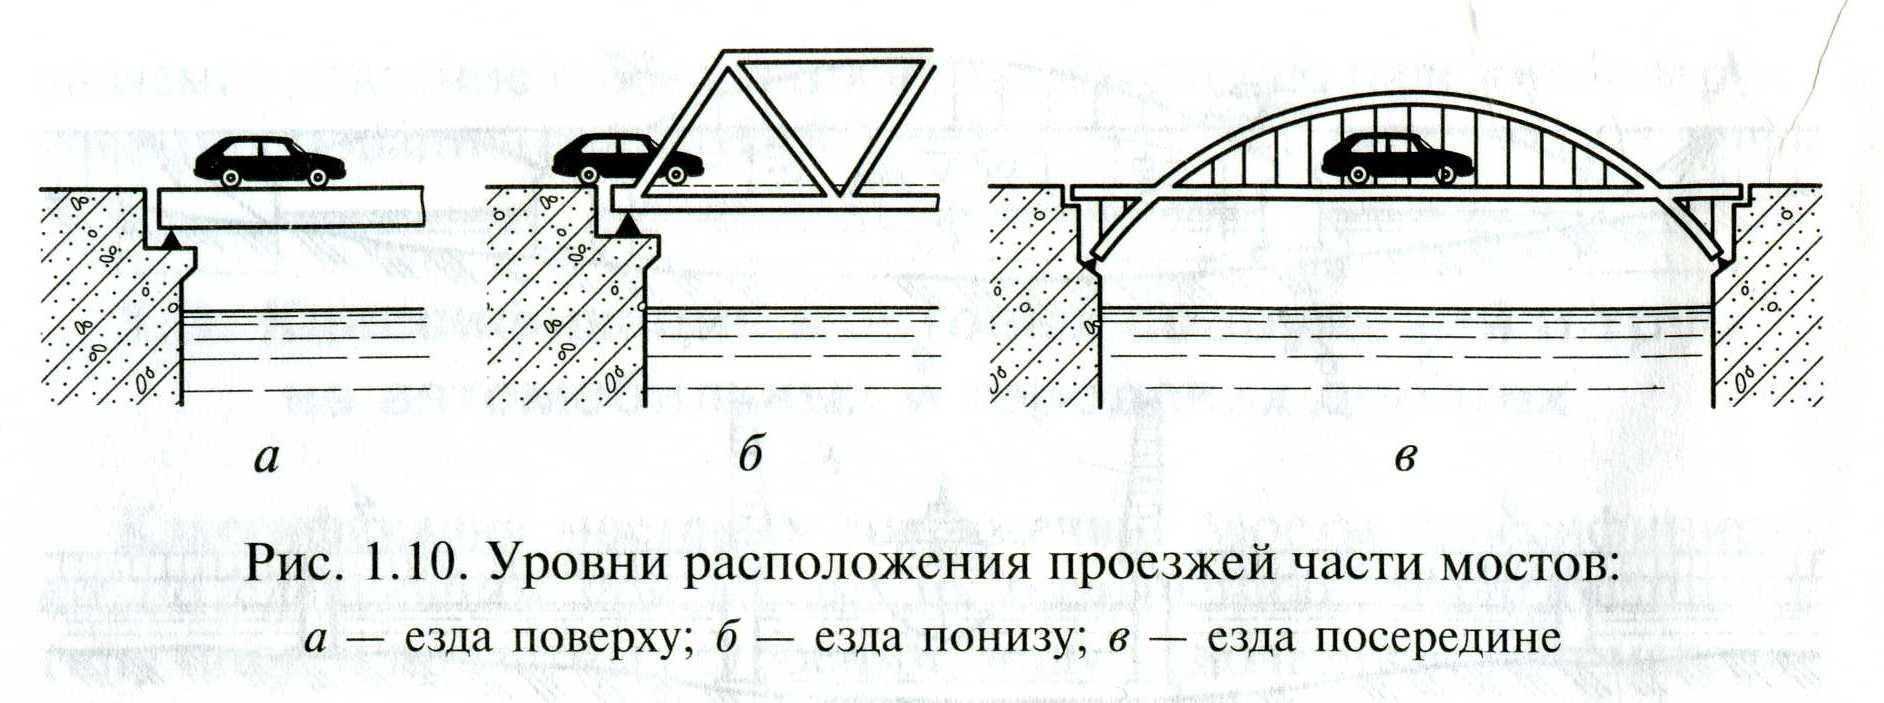 Нижний край моста. Балочный мост с ездой понизу. Уровни расположения проезжей части мостов. Мосты железобетонные балочные пролётные строения с ездой понизу. Классификация пролетных строений мостовых сооружений.